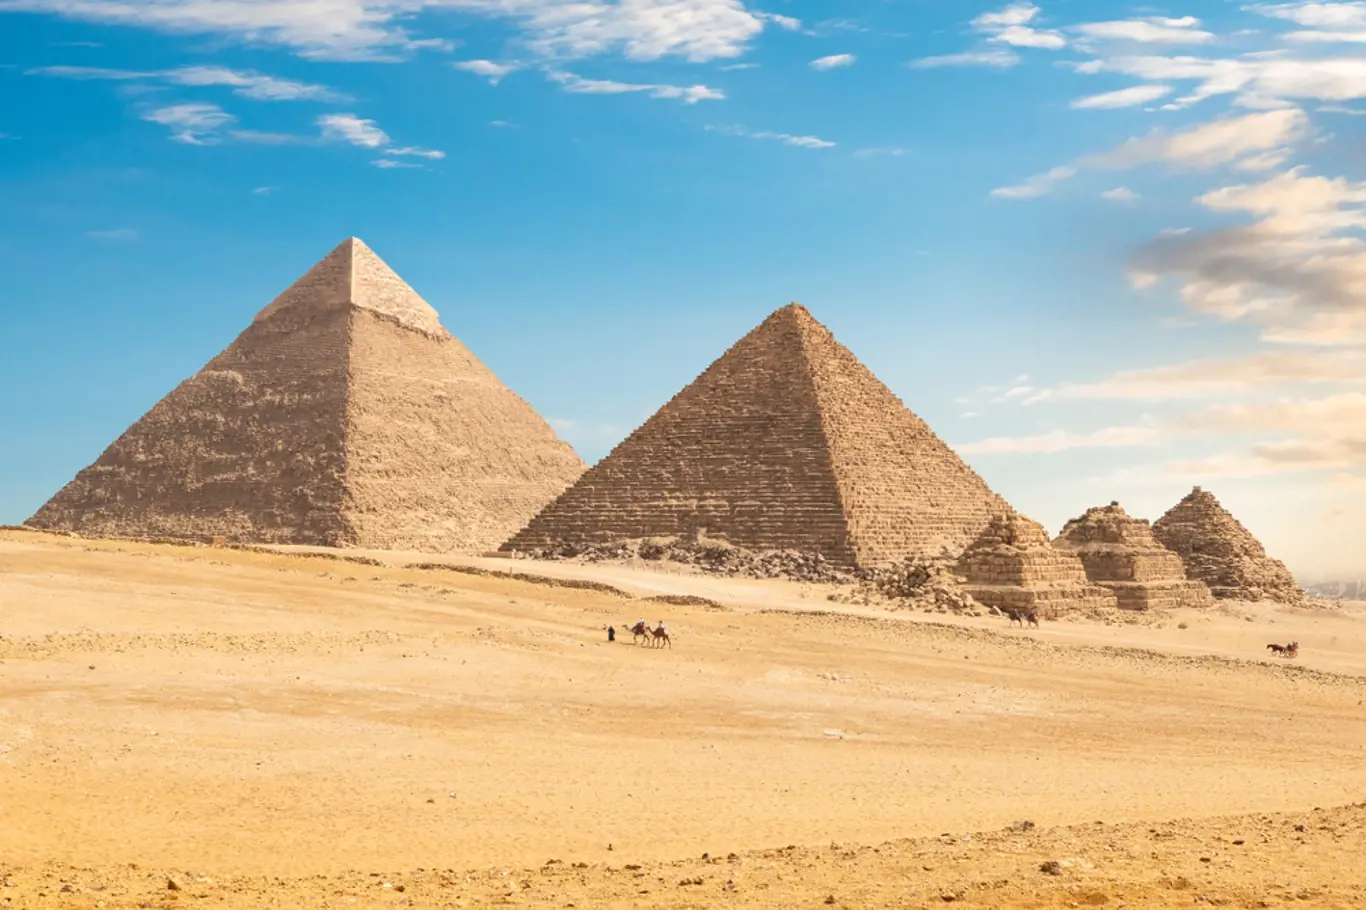 Pyramidy v Gíze - byly vybudovány pomocí systému ramp?